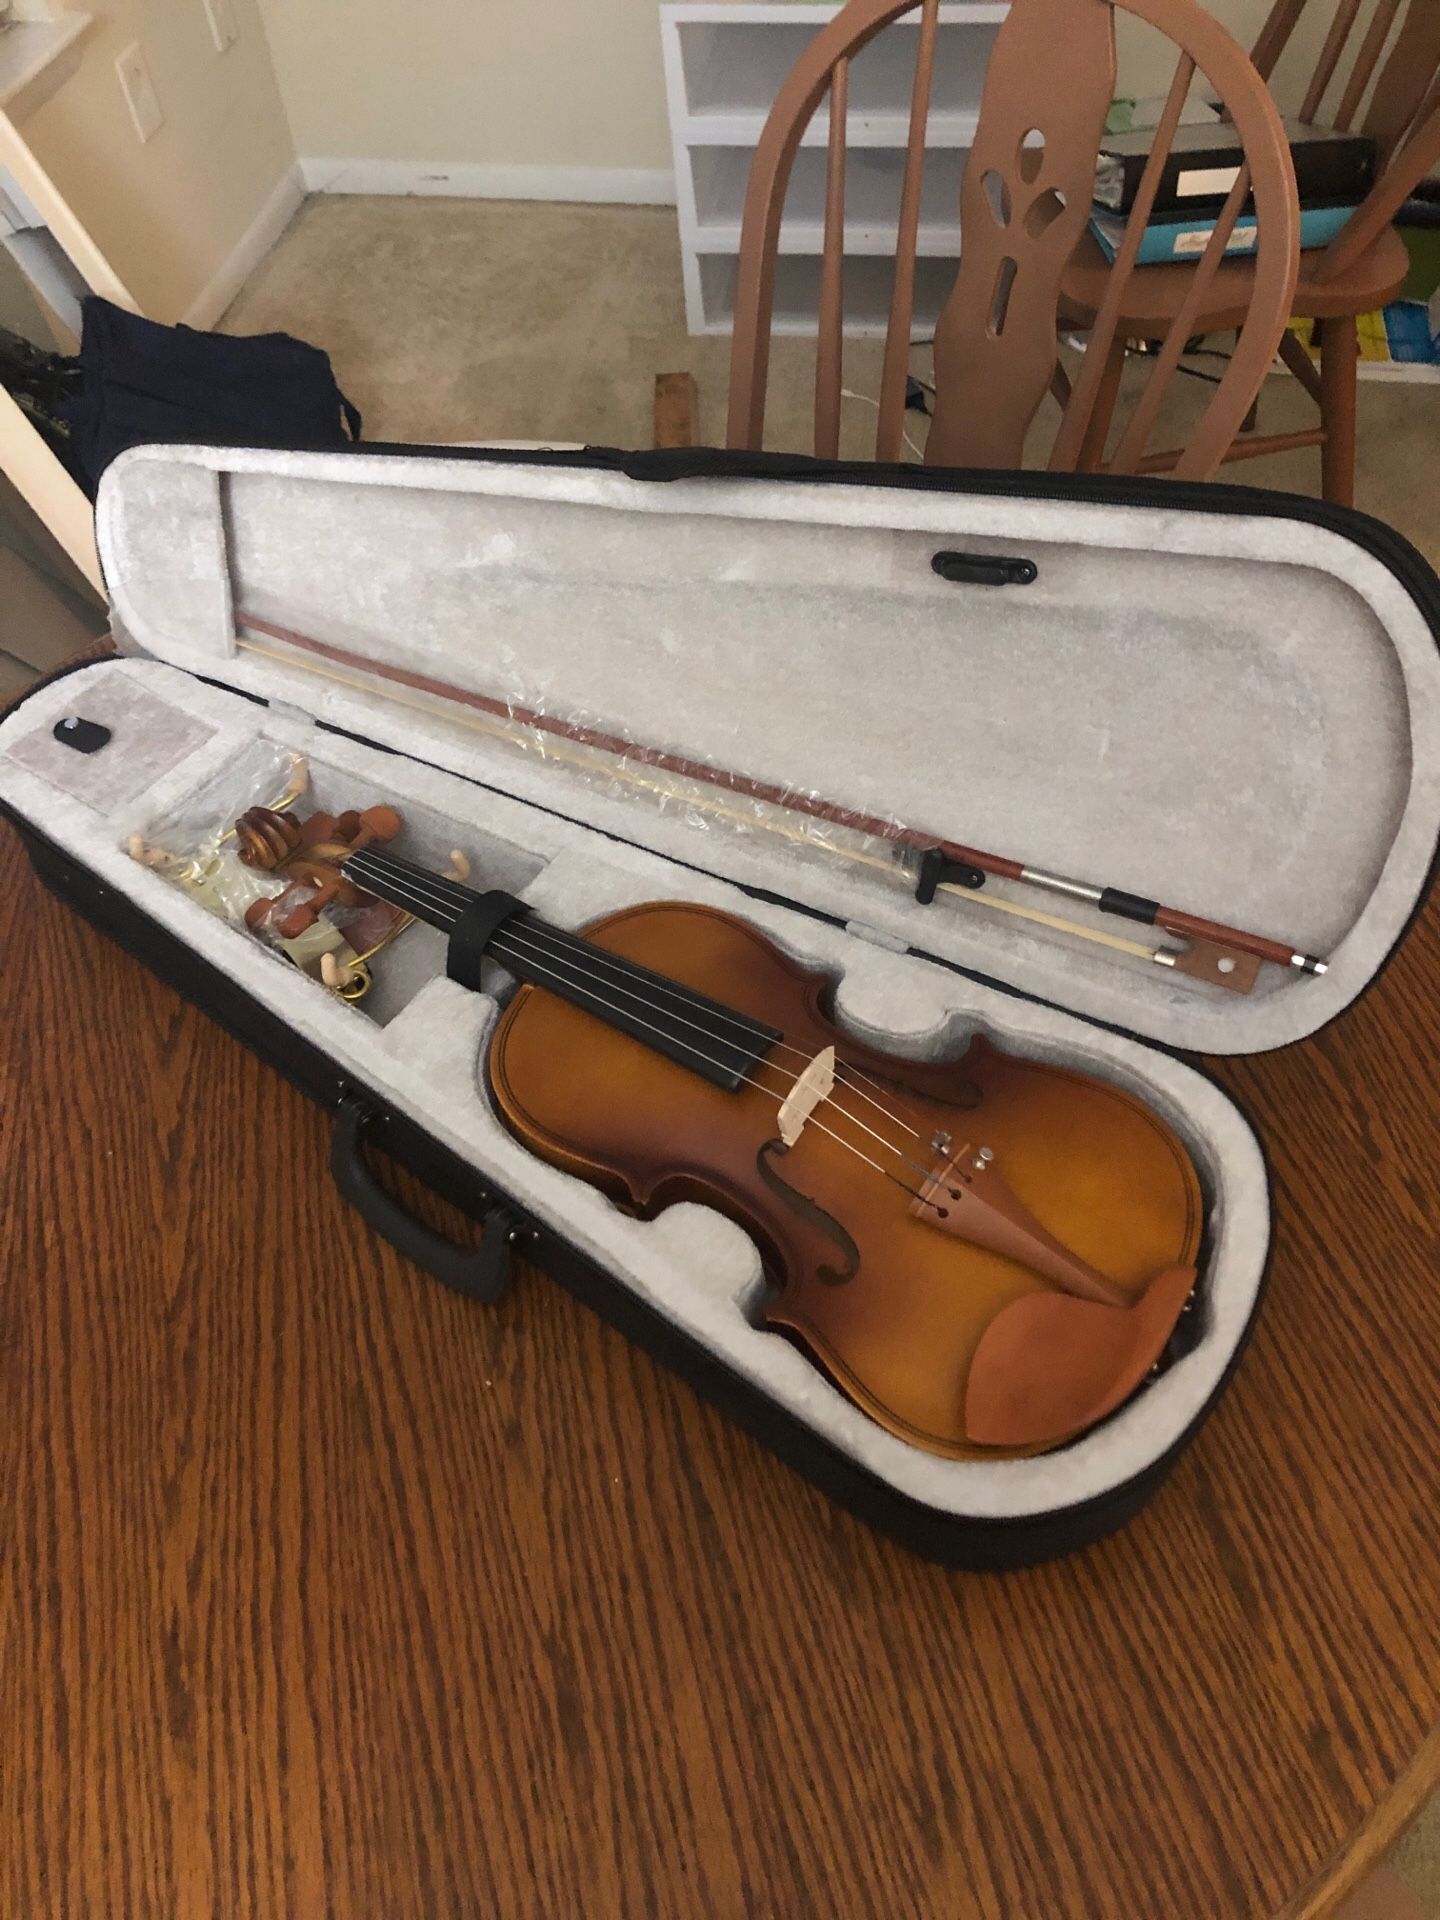 Beginners violin